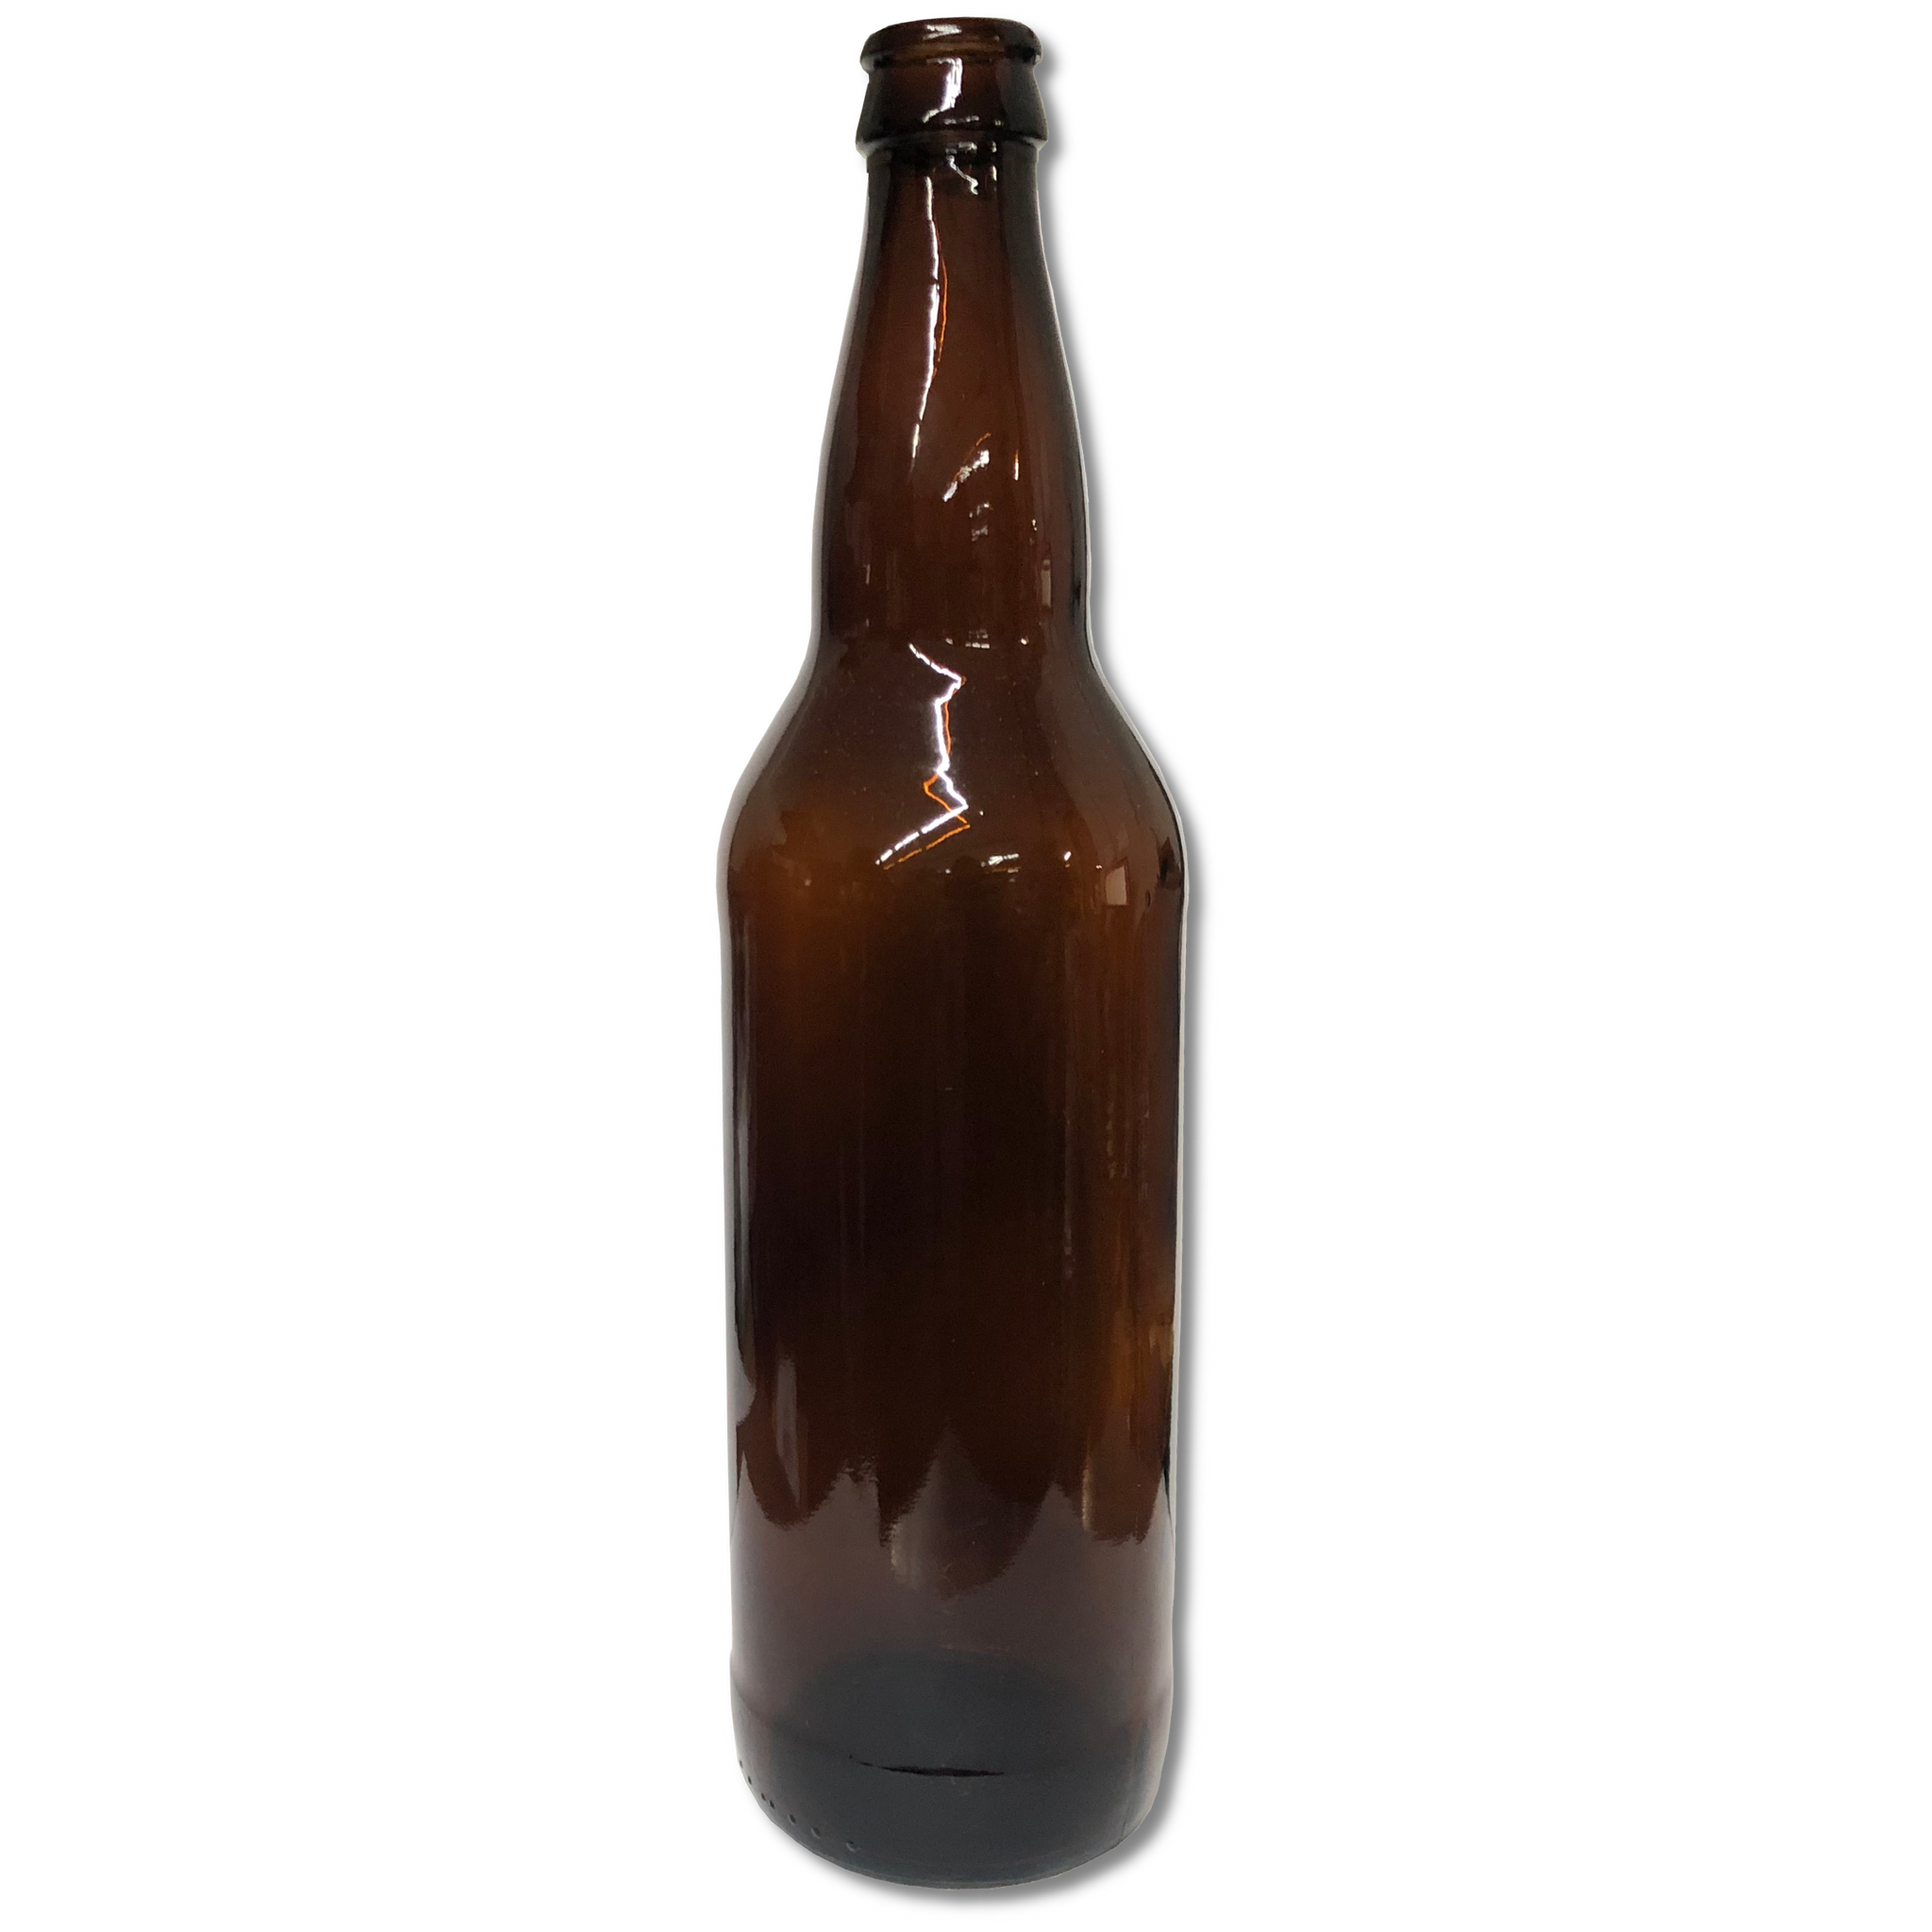 12 oz Beer Bottles- AMBER- Case of 24